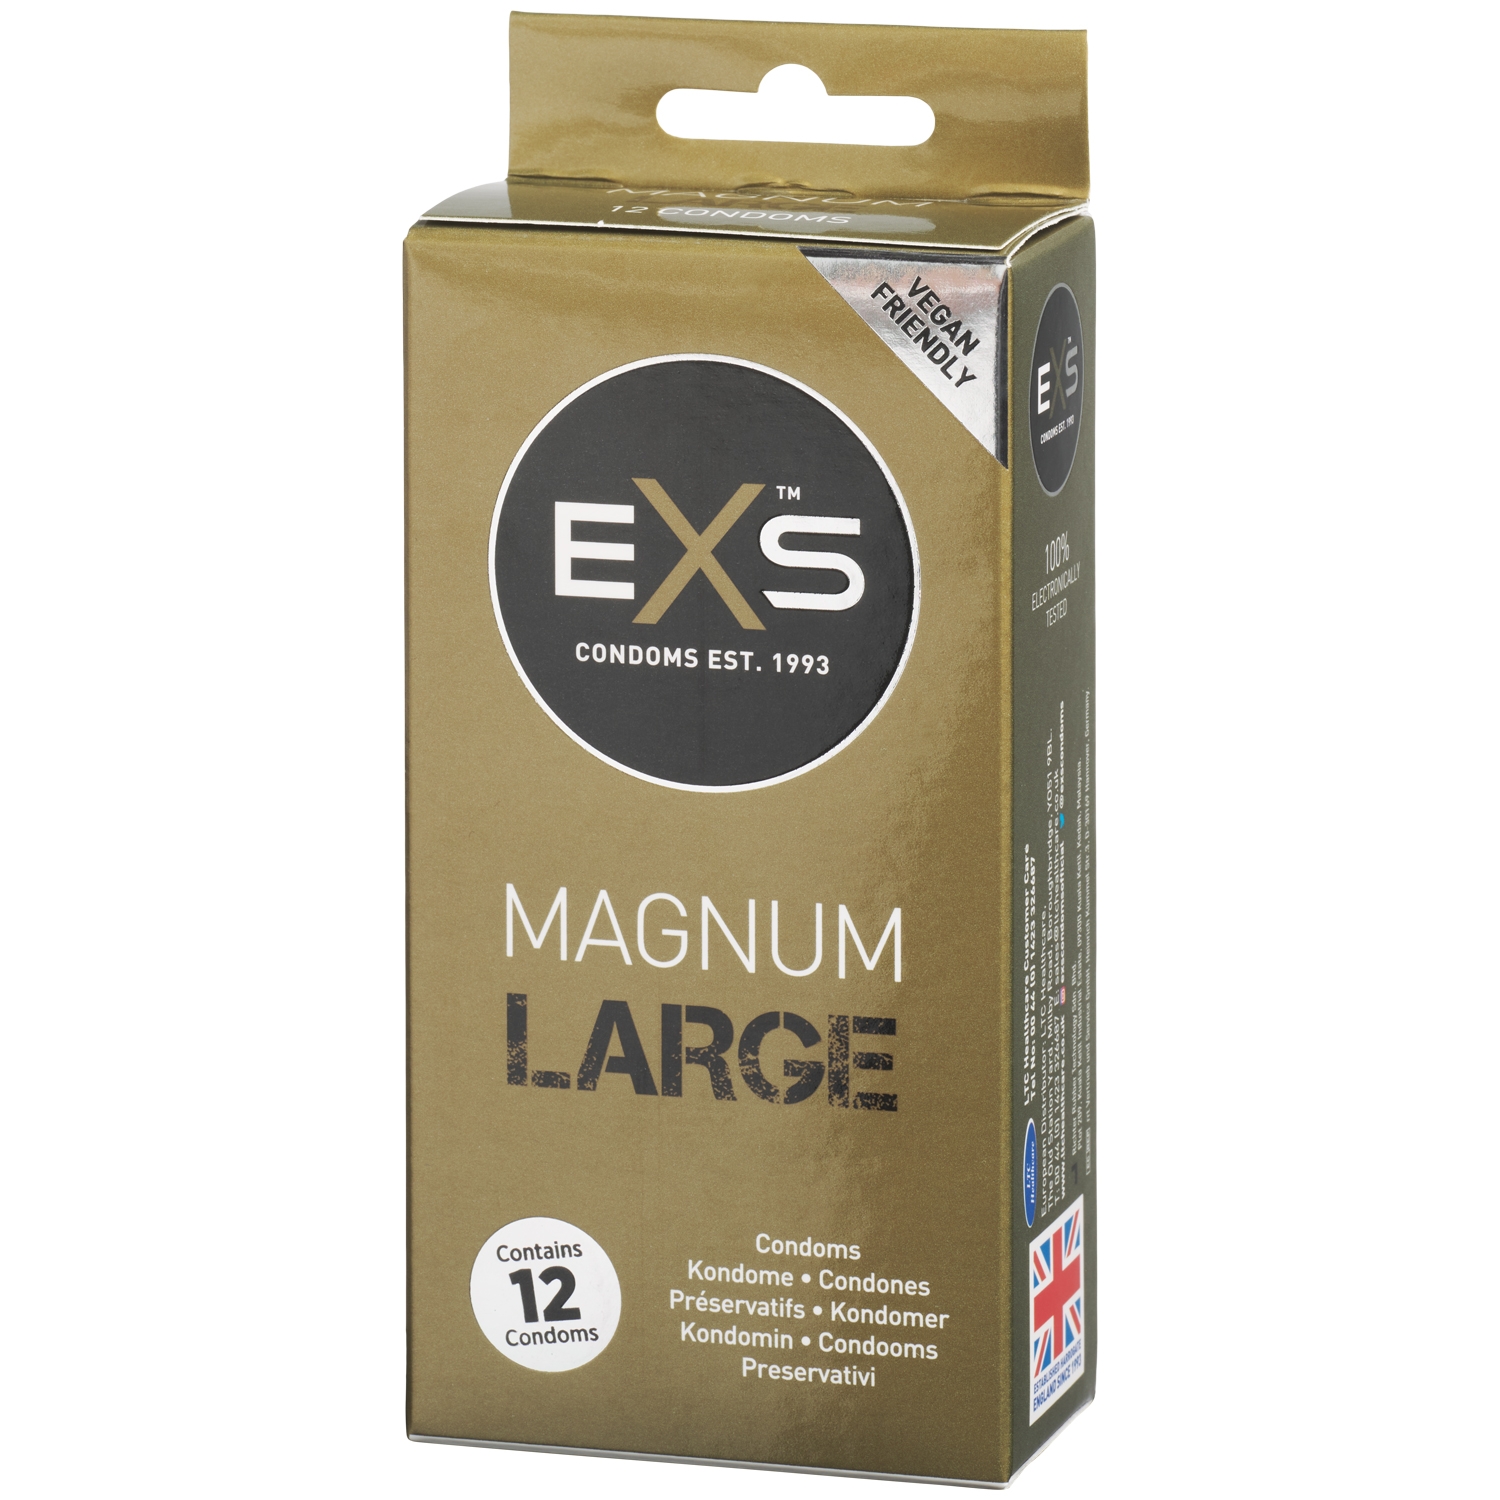 EXS Magnum Large Kondomer 12 st - Klar | Tillbehör//Kondomer//Män//Bättre Sex//Par kondomer//Stora Kondomer//Vanliga Kondomer//EXS | Intimast